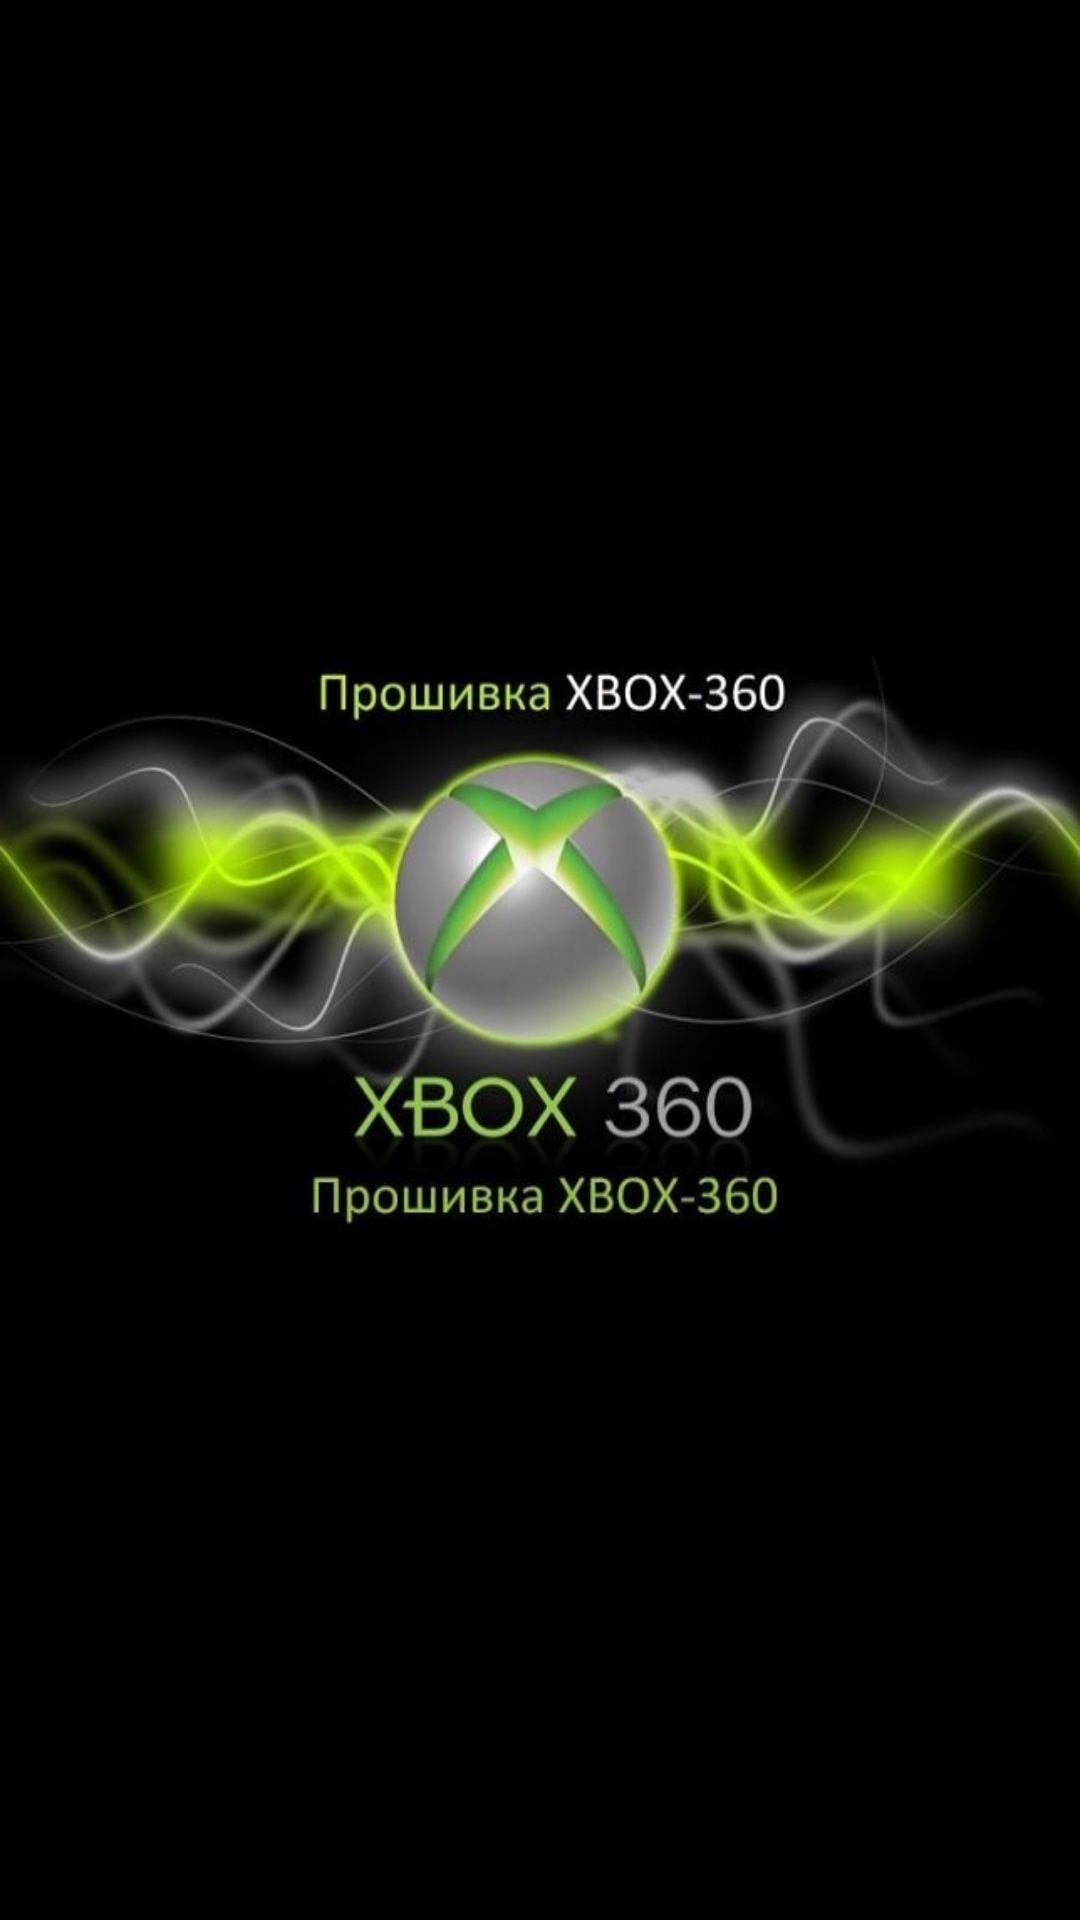 Прошивка Xbox360-freeboot - 15000 тенге